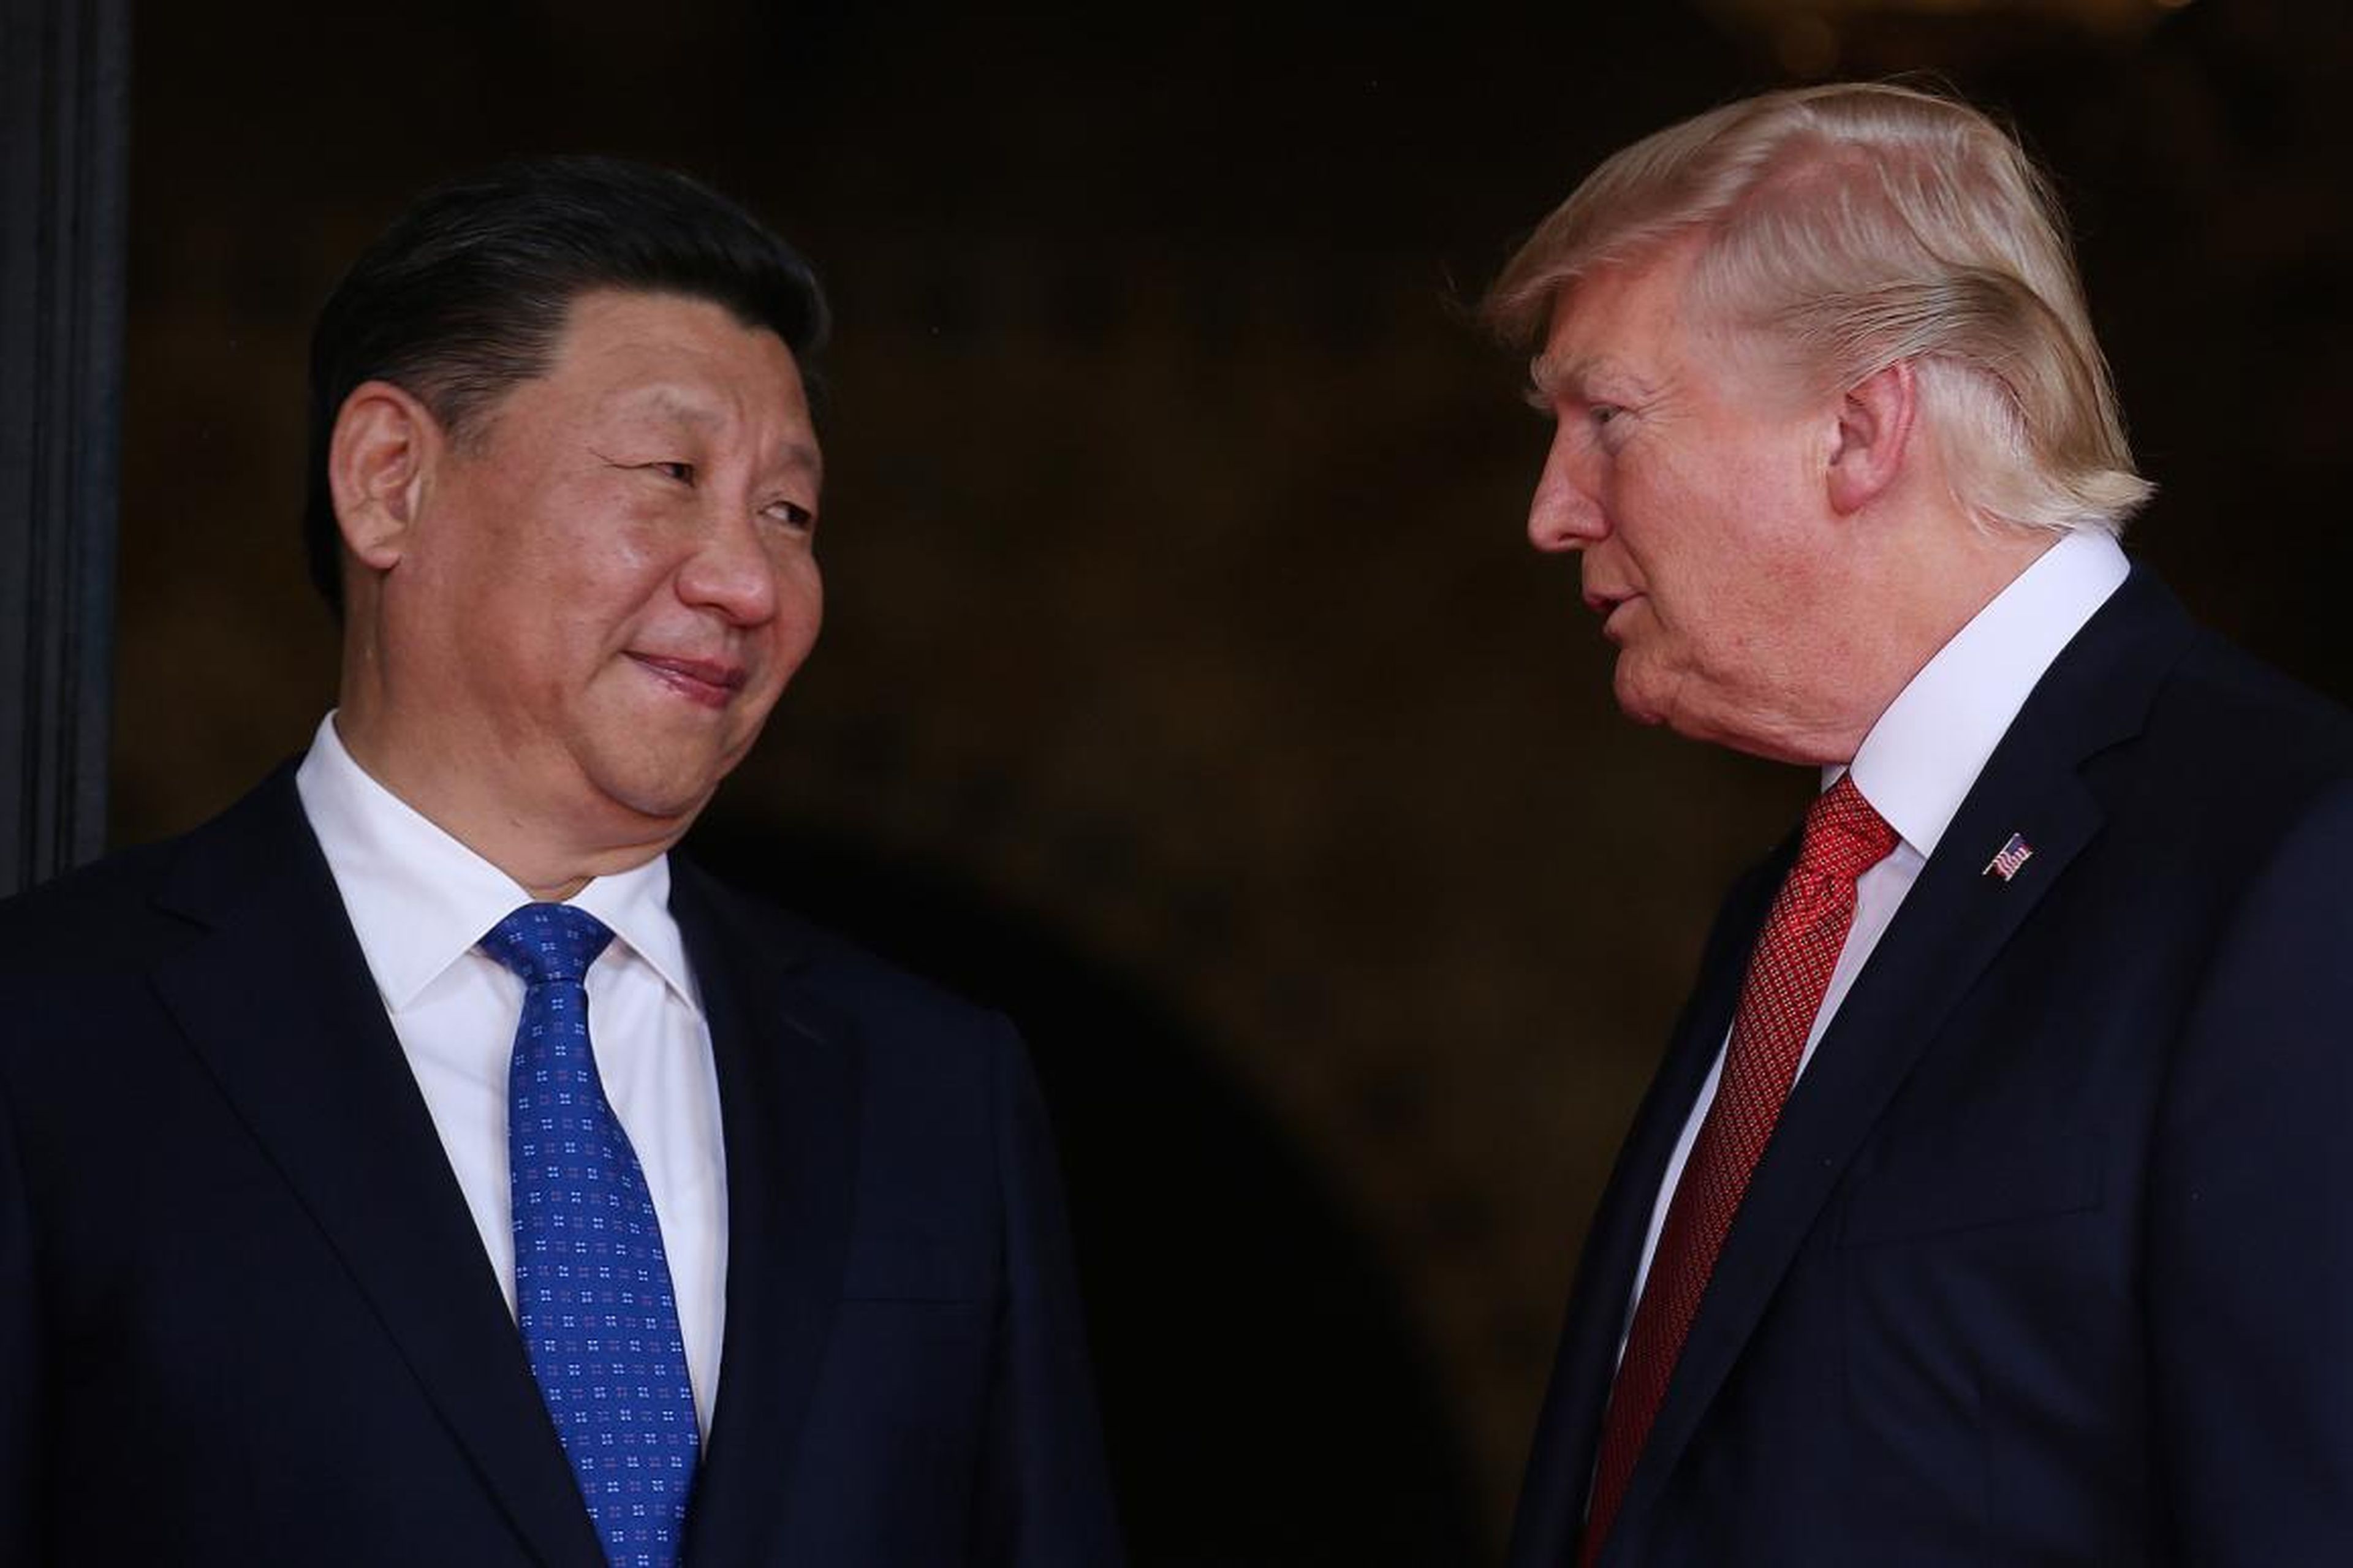 El presidente de EE.UU., Donald Trump, da la bienvenida al presidente chino Xi Jinping en Mar-a-Lago en Palm Beach, Florida.